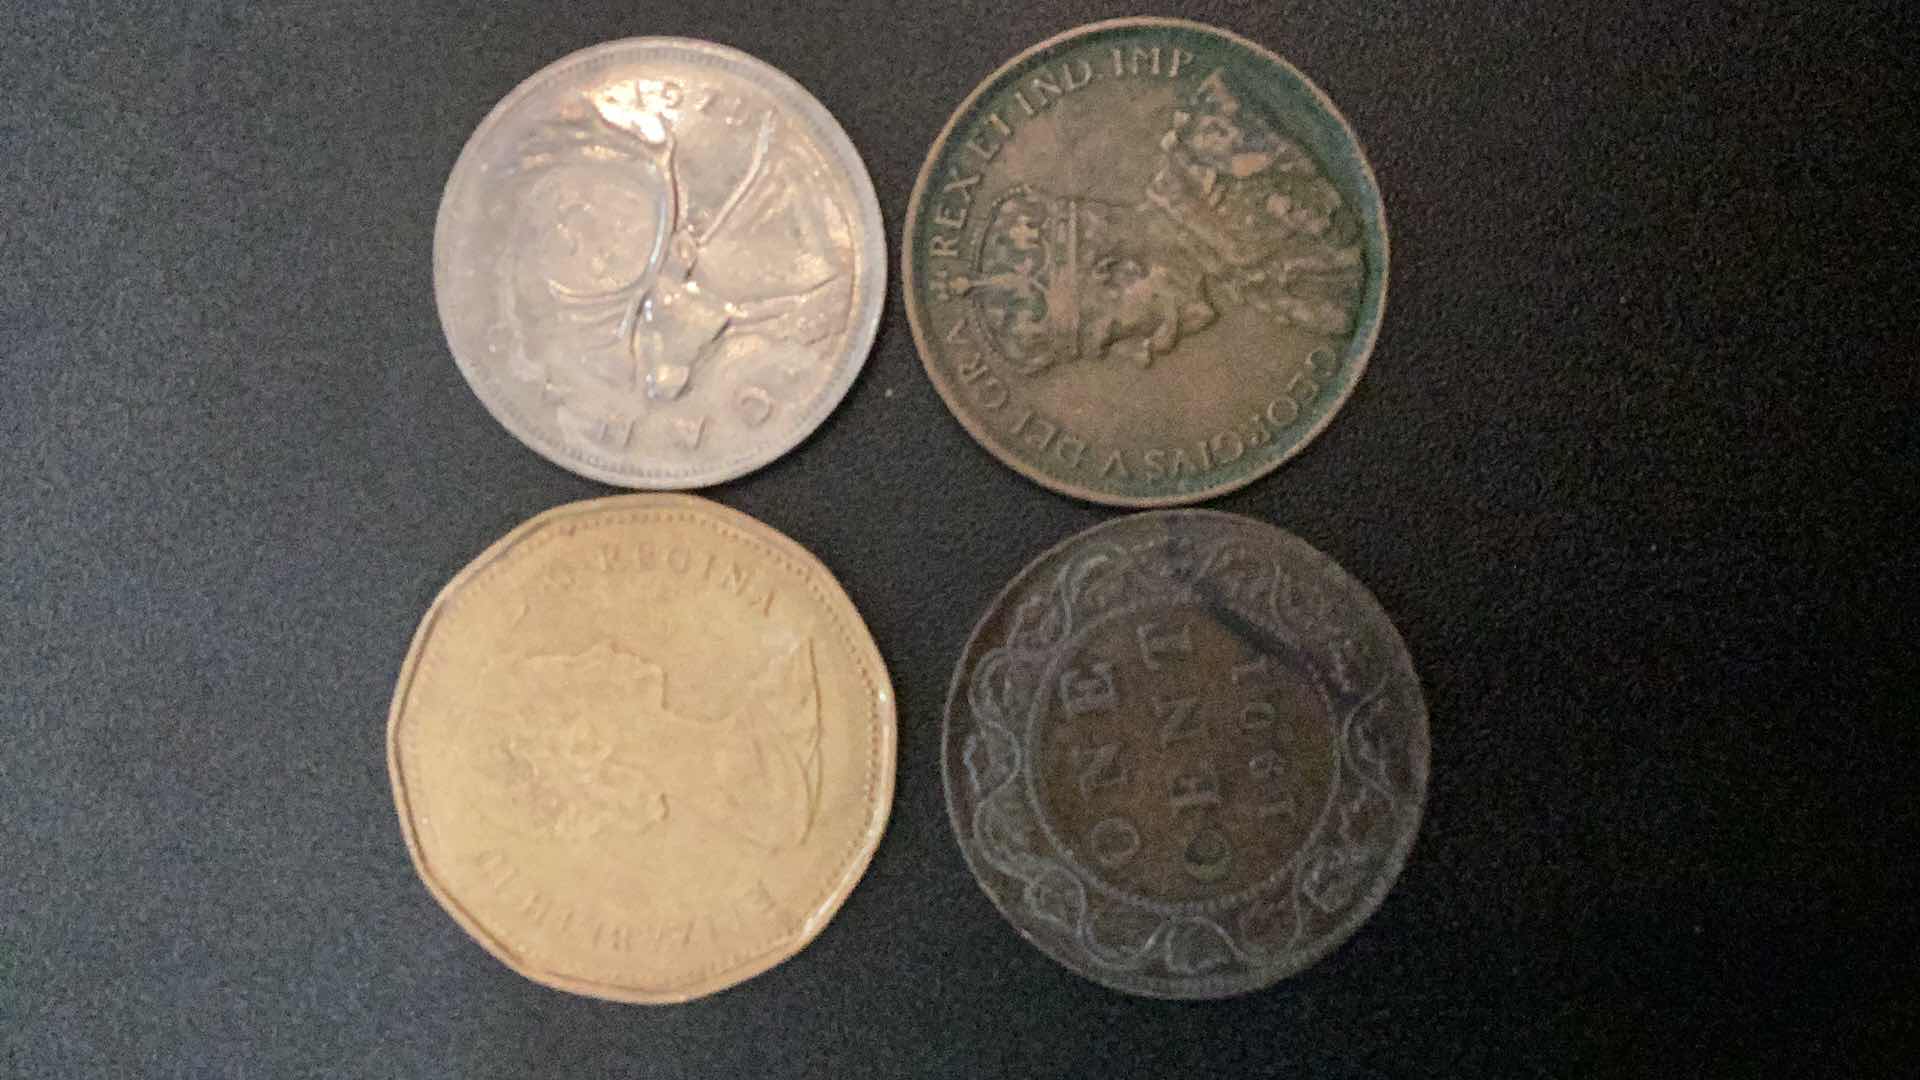 Photo 1 of 4 COLLECTIBLE COINS - CANADA, 1901, 1915, 1975, 1989